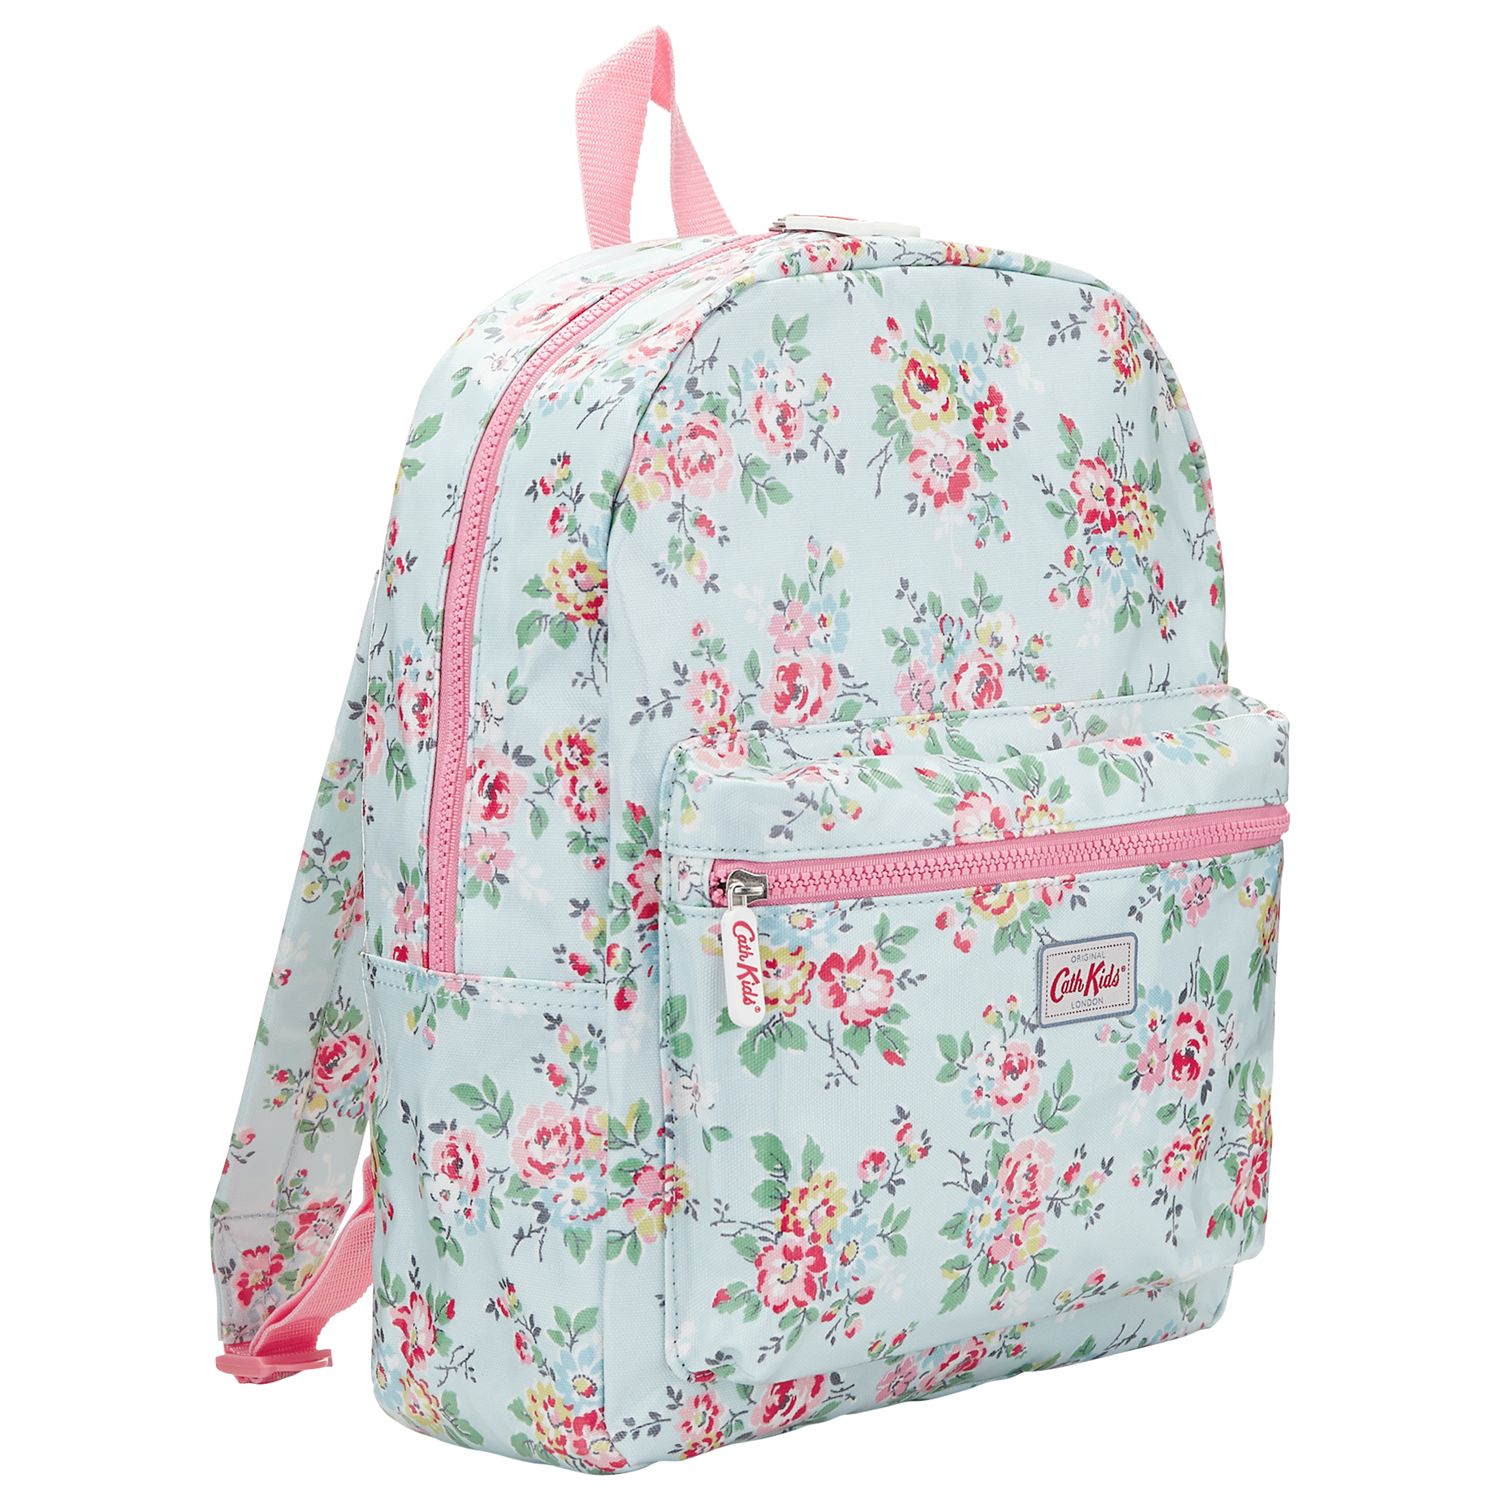 cath kids backpack